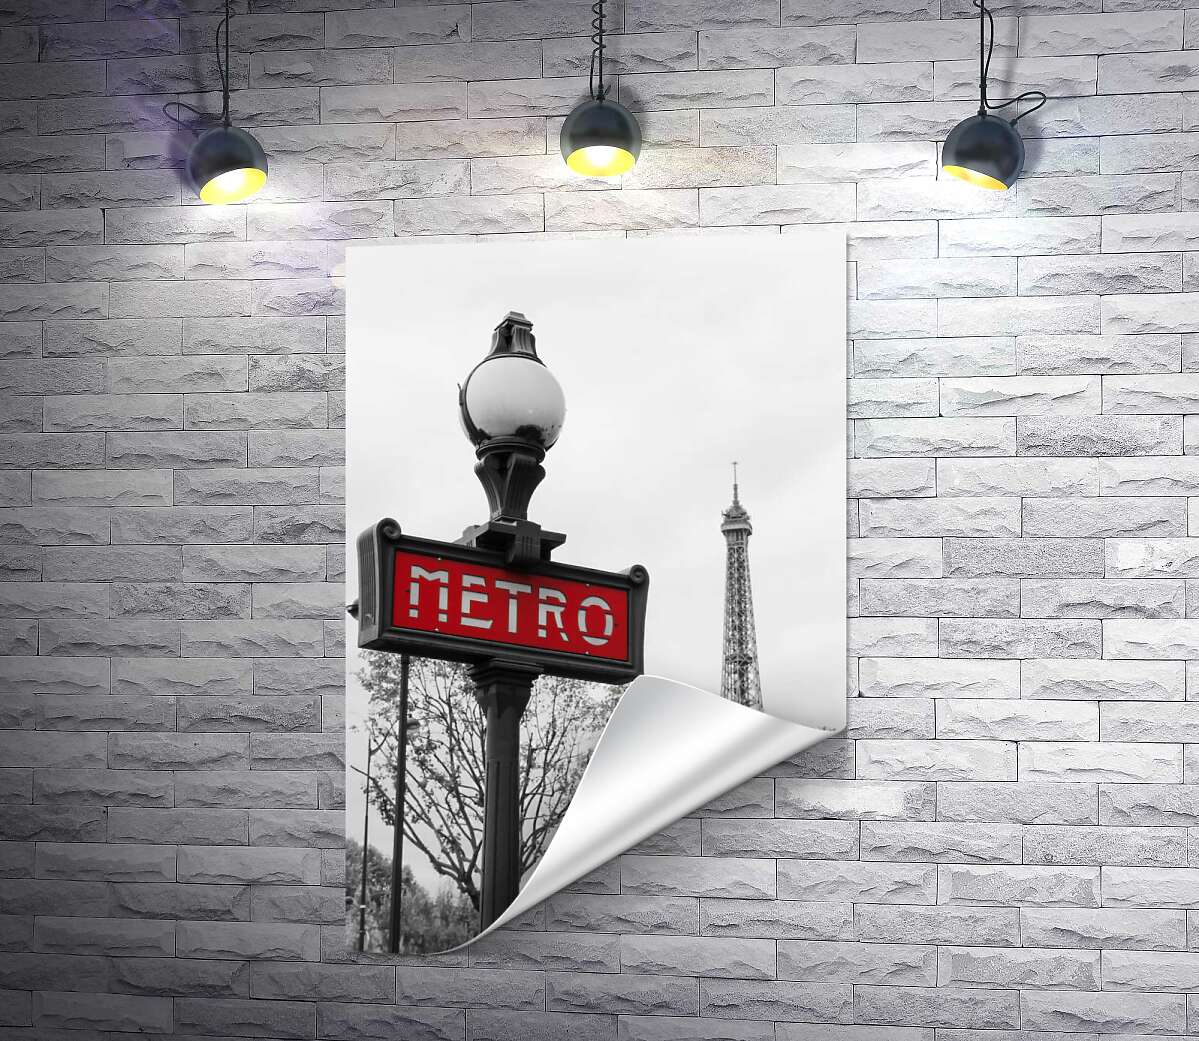 друк Ліхтар з вінтажним написом "metro" на фоні Ейфелевої вежі (Eiffel tower)